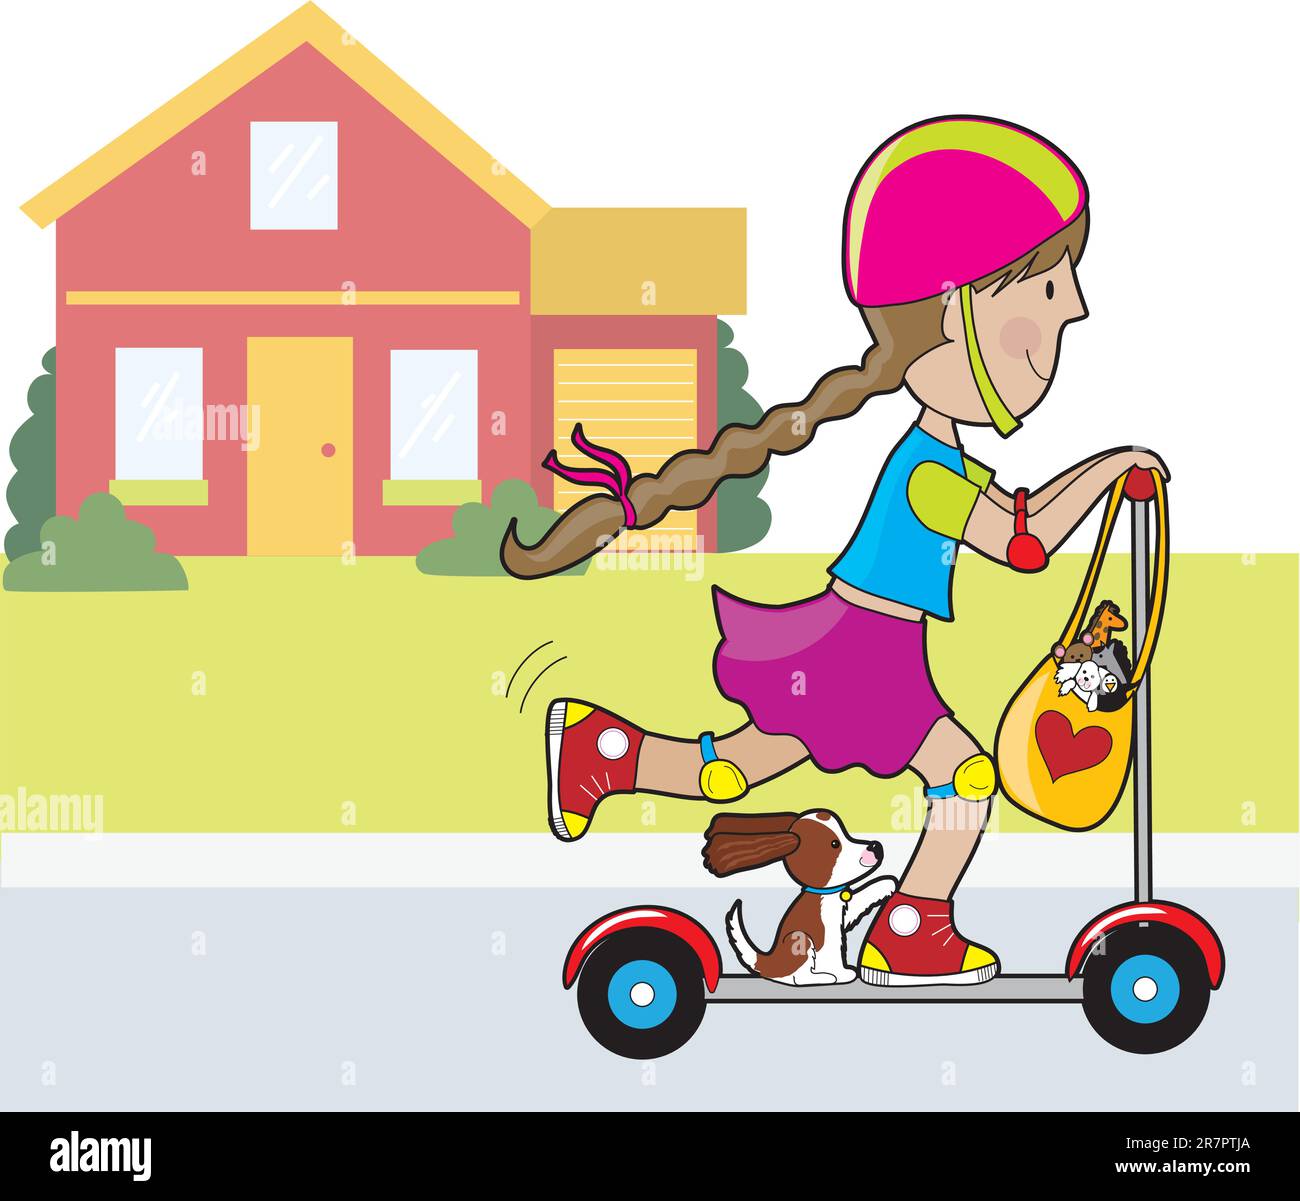 Une petite fille et son chien vont pour un tour sur un scooter.in devant d'une maison rouge. Un sac de jouets en peluche est suspendu au volant. Illustration de Vecteur